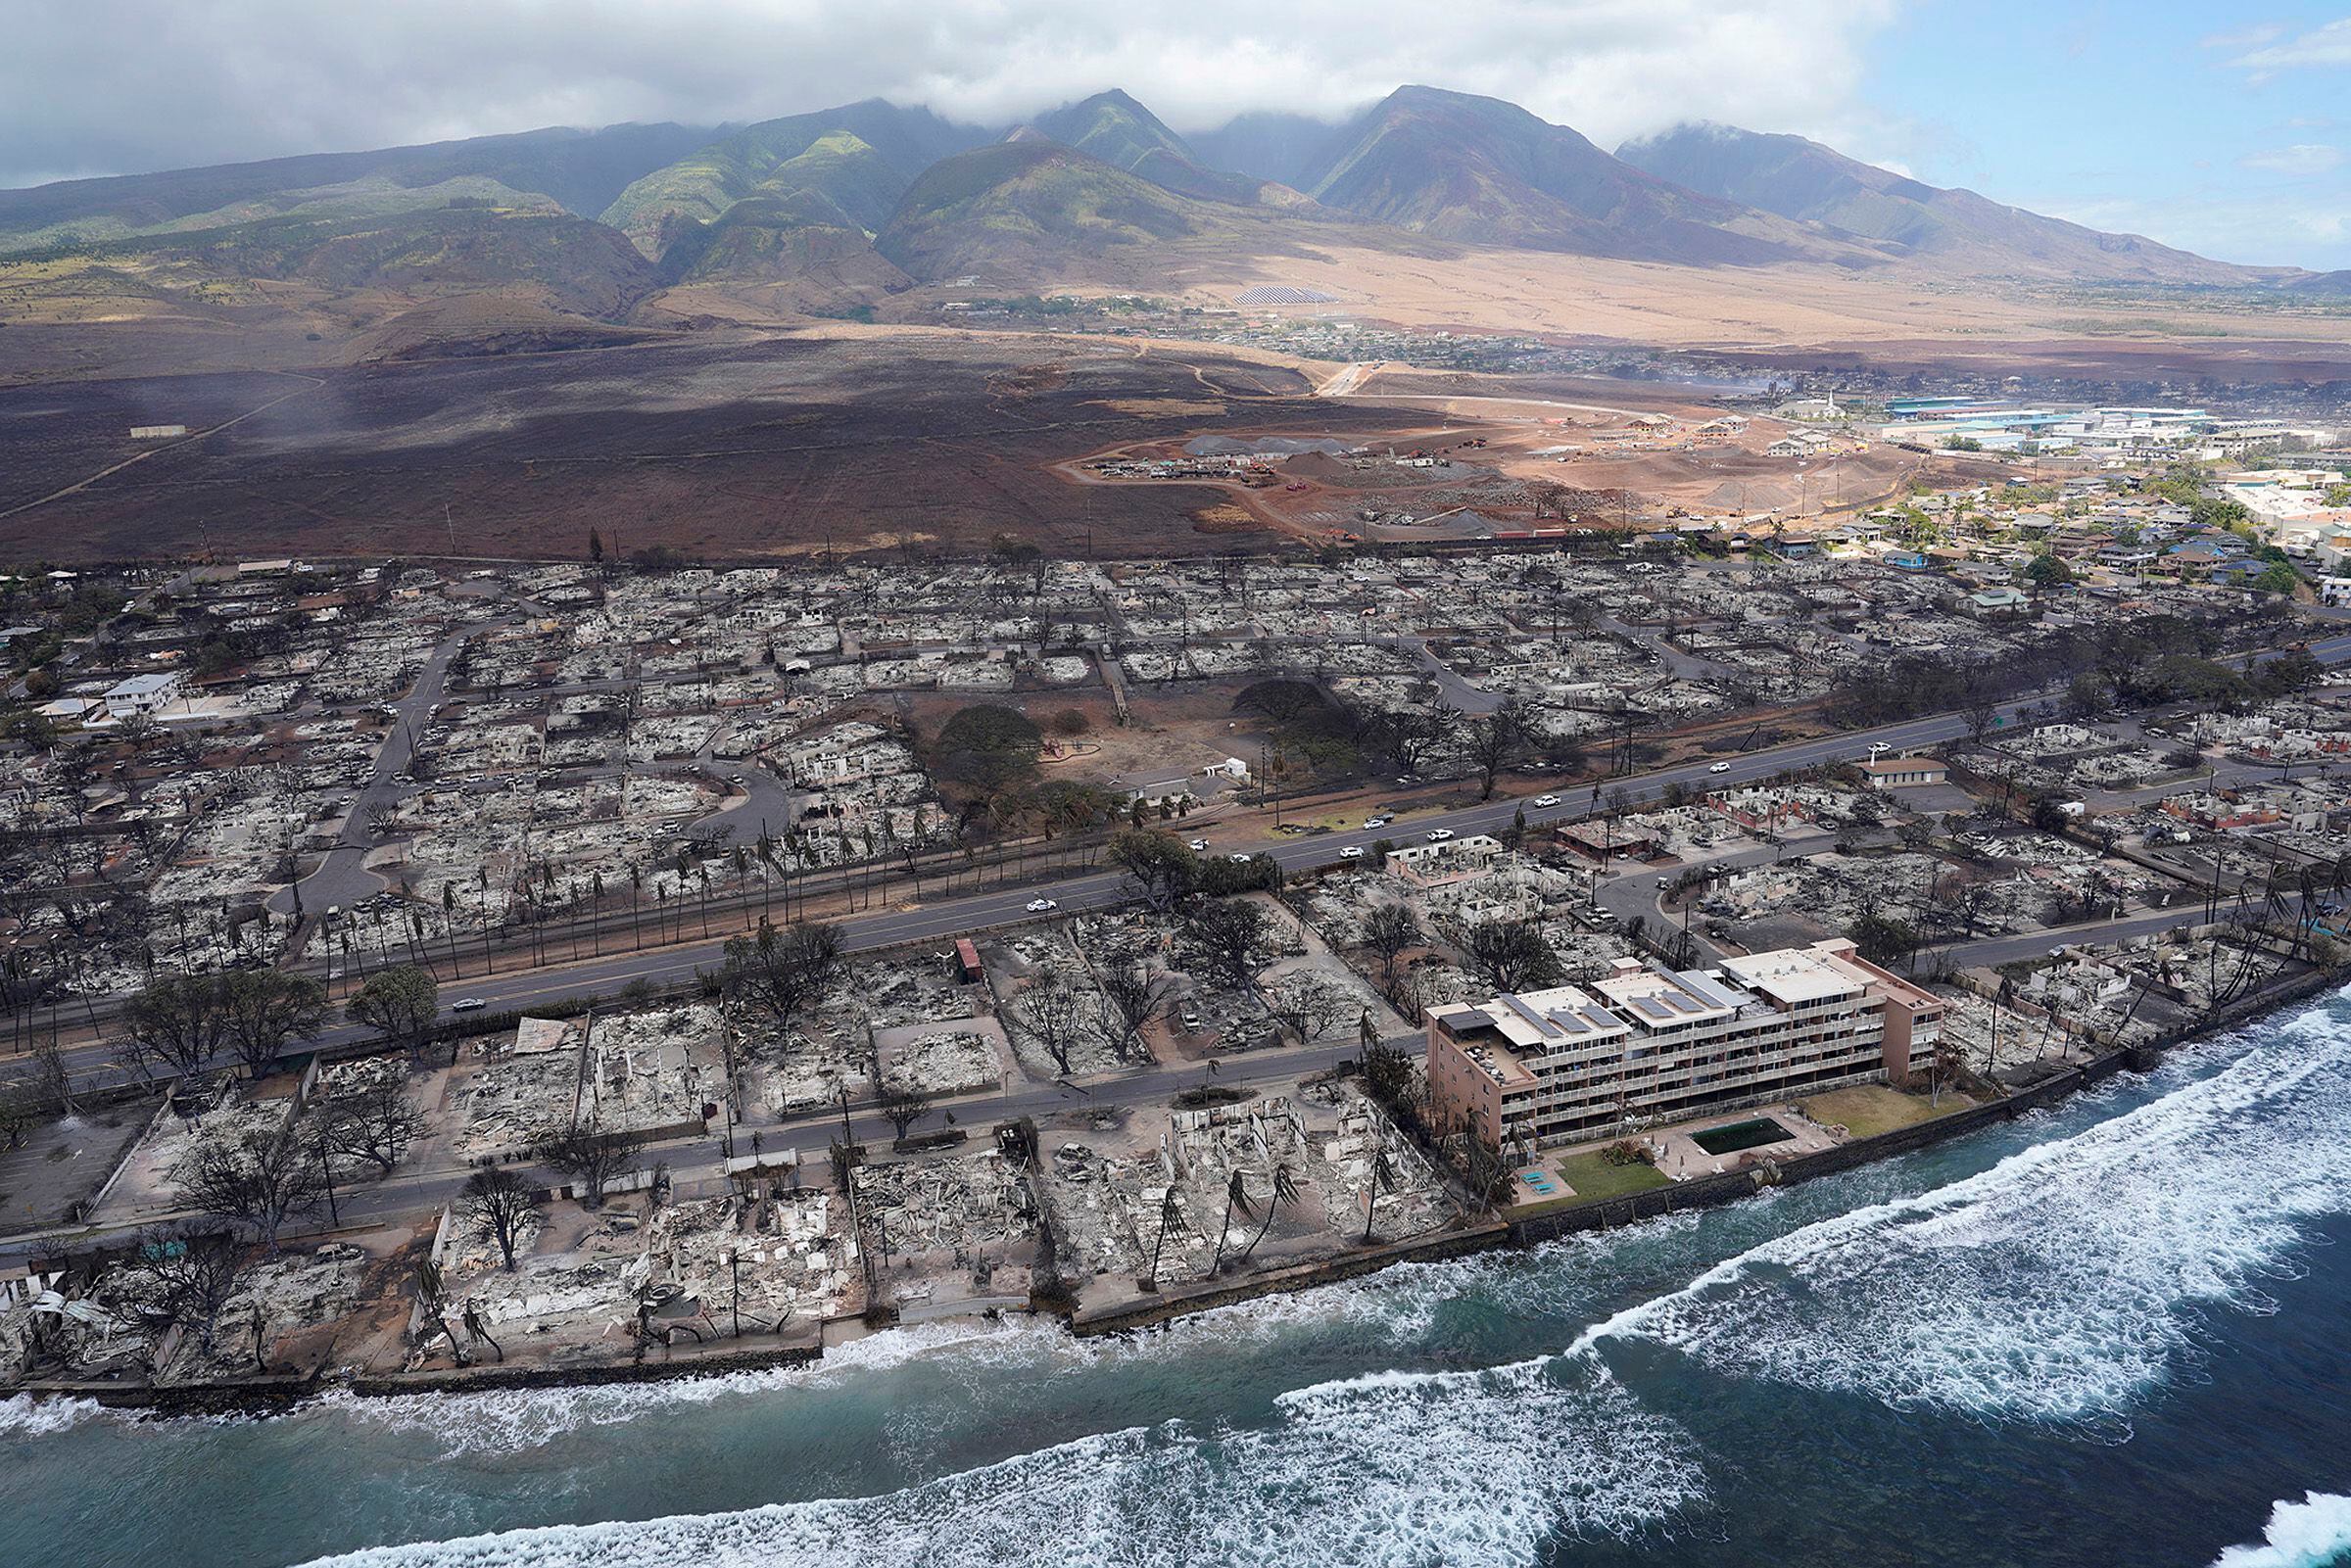 Los muertos por los incendios en Maui, Hawái, ya supera el centenar de víctimas. (Europa Press/Contacto/Kevin Fujii)
